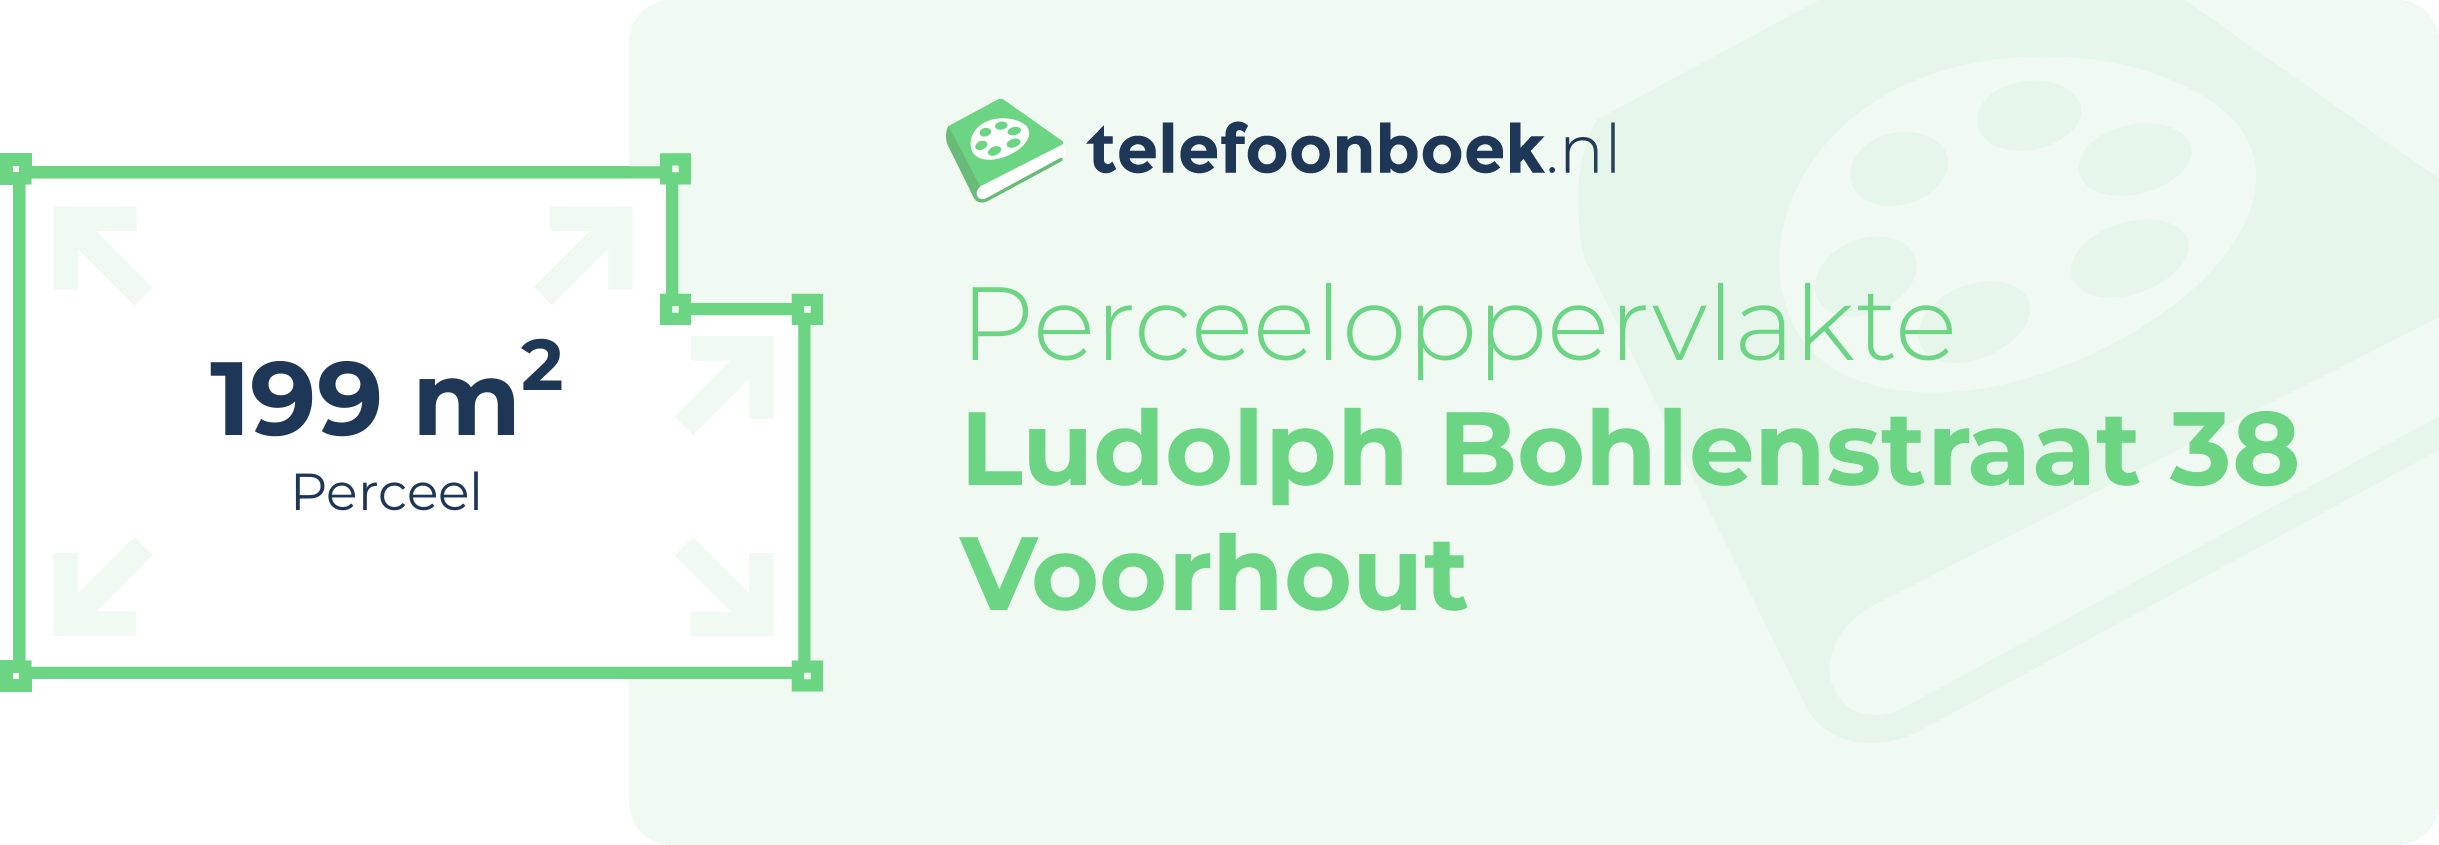 Perceeloppervlakte Ludolph Bohlenstraat 38 Voorhout